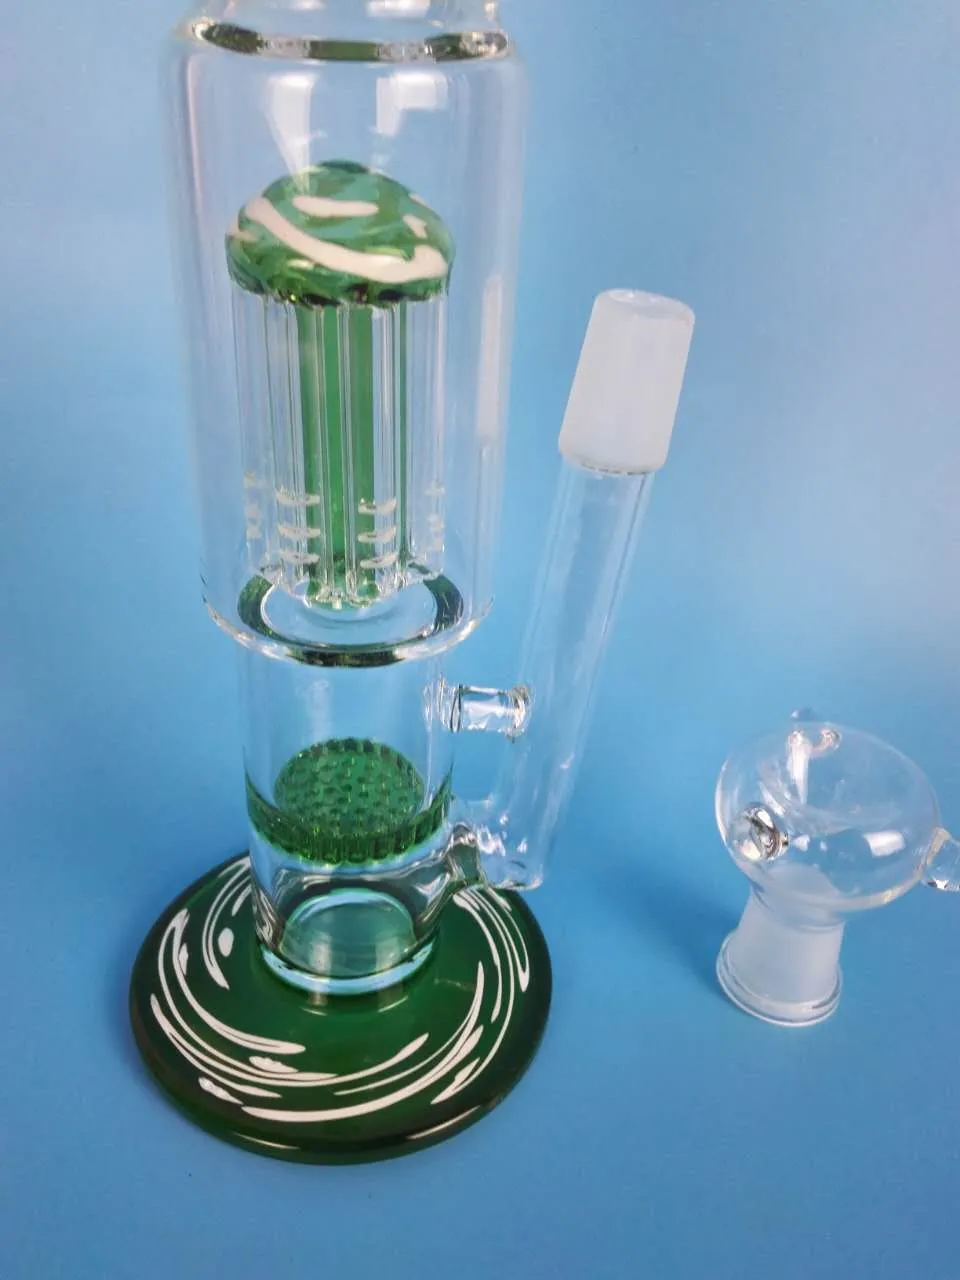 h: 34 livraison gratuite fourchette en verre filtre en nid d'abeille conduite d'eau en verre conduite d'eau qualité de marque, h: 38 cm d: 5cn/4.5 cm. vert